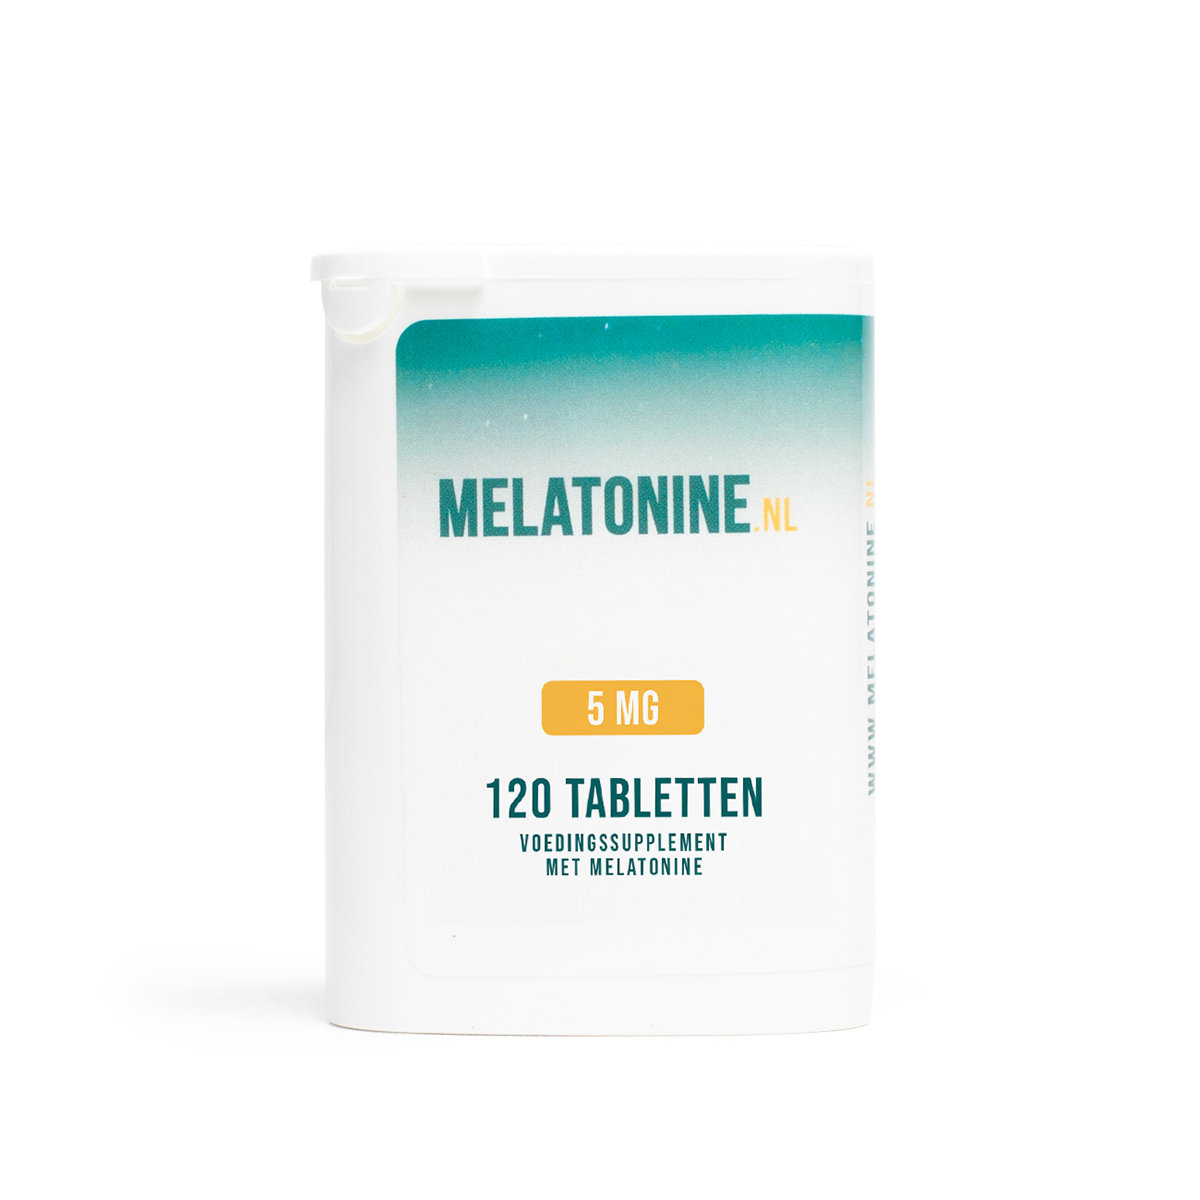 Melatonine 0,25 mg 600 tabletten